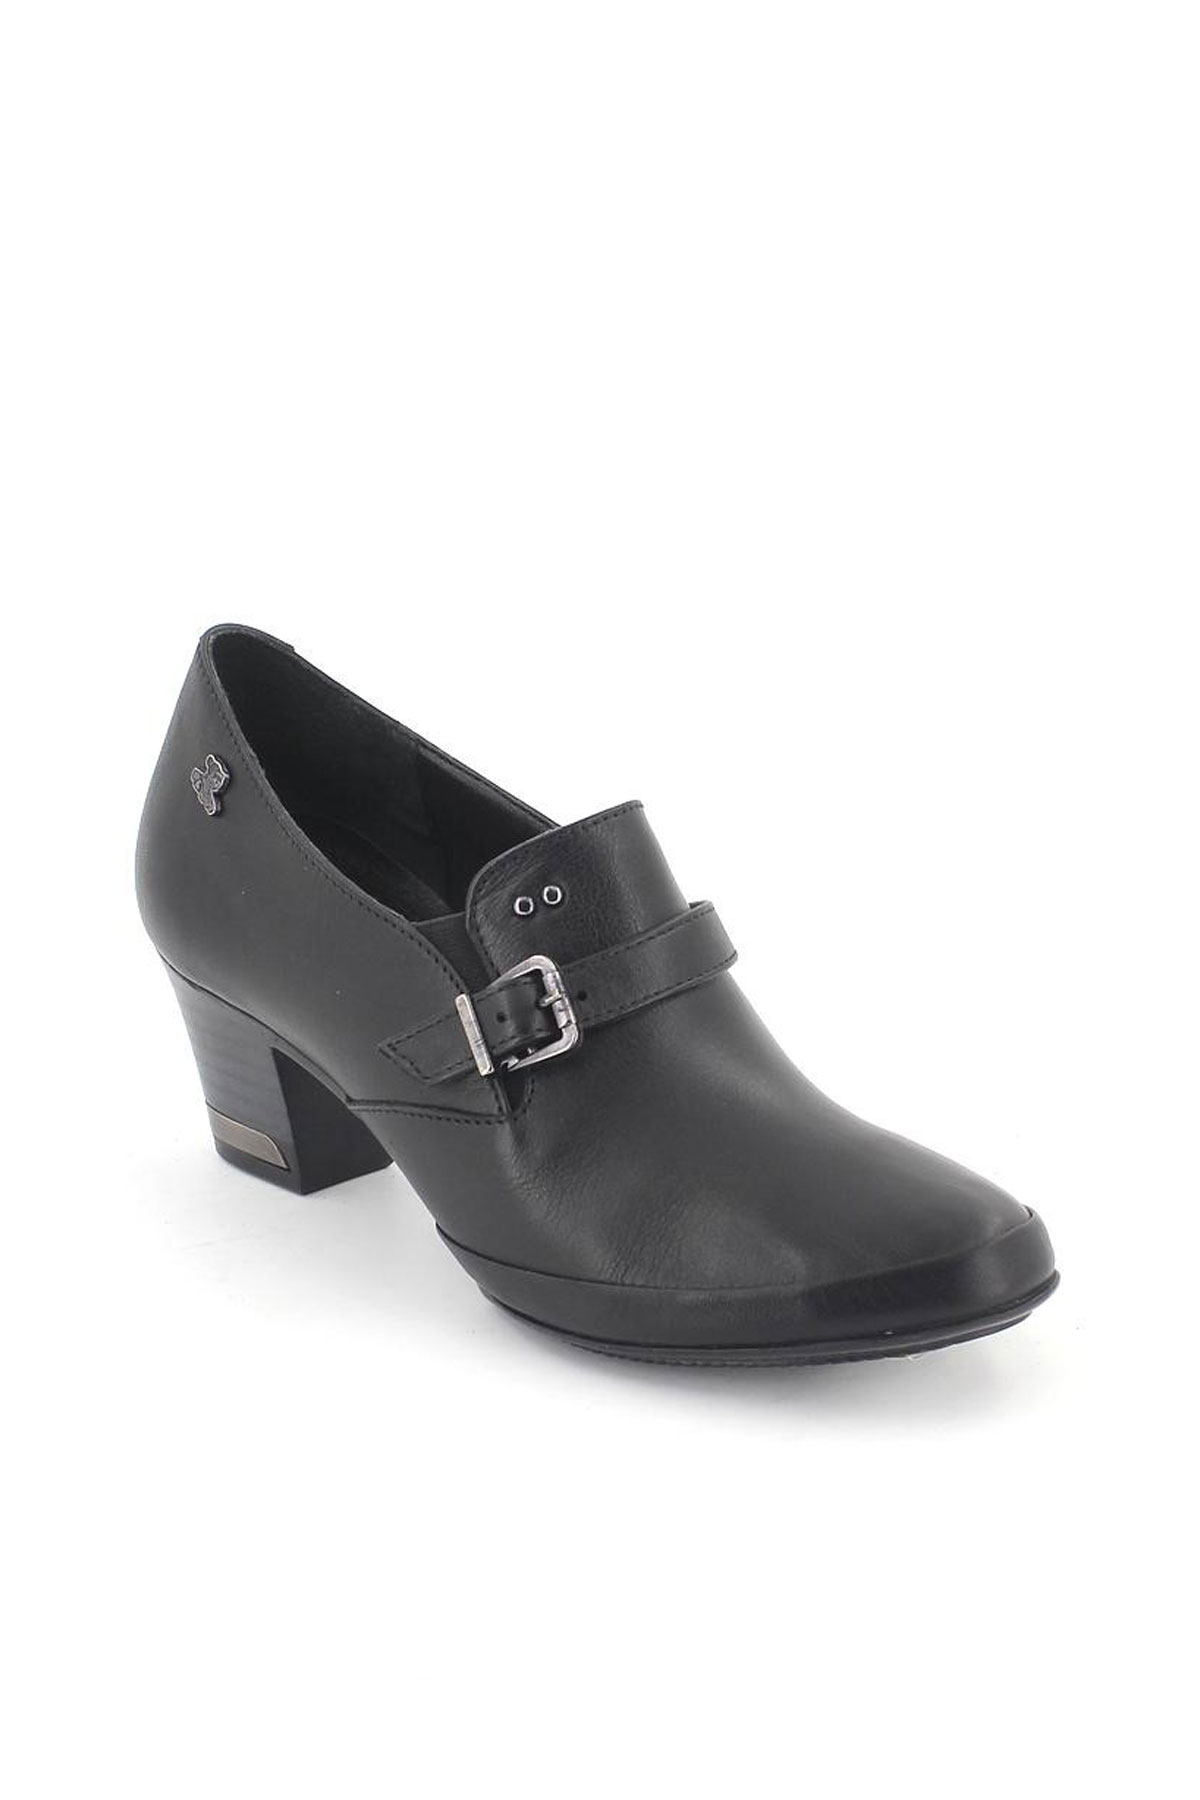 Kadın Topuklu Deri Ayakkabı Siyah 1348K